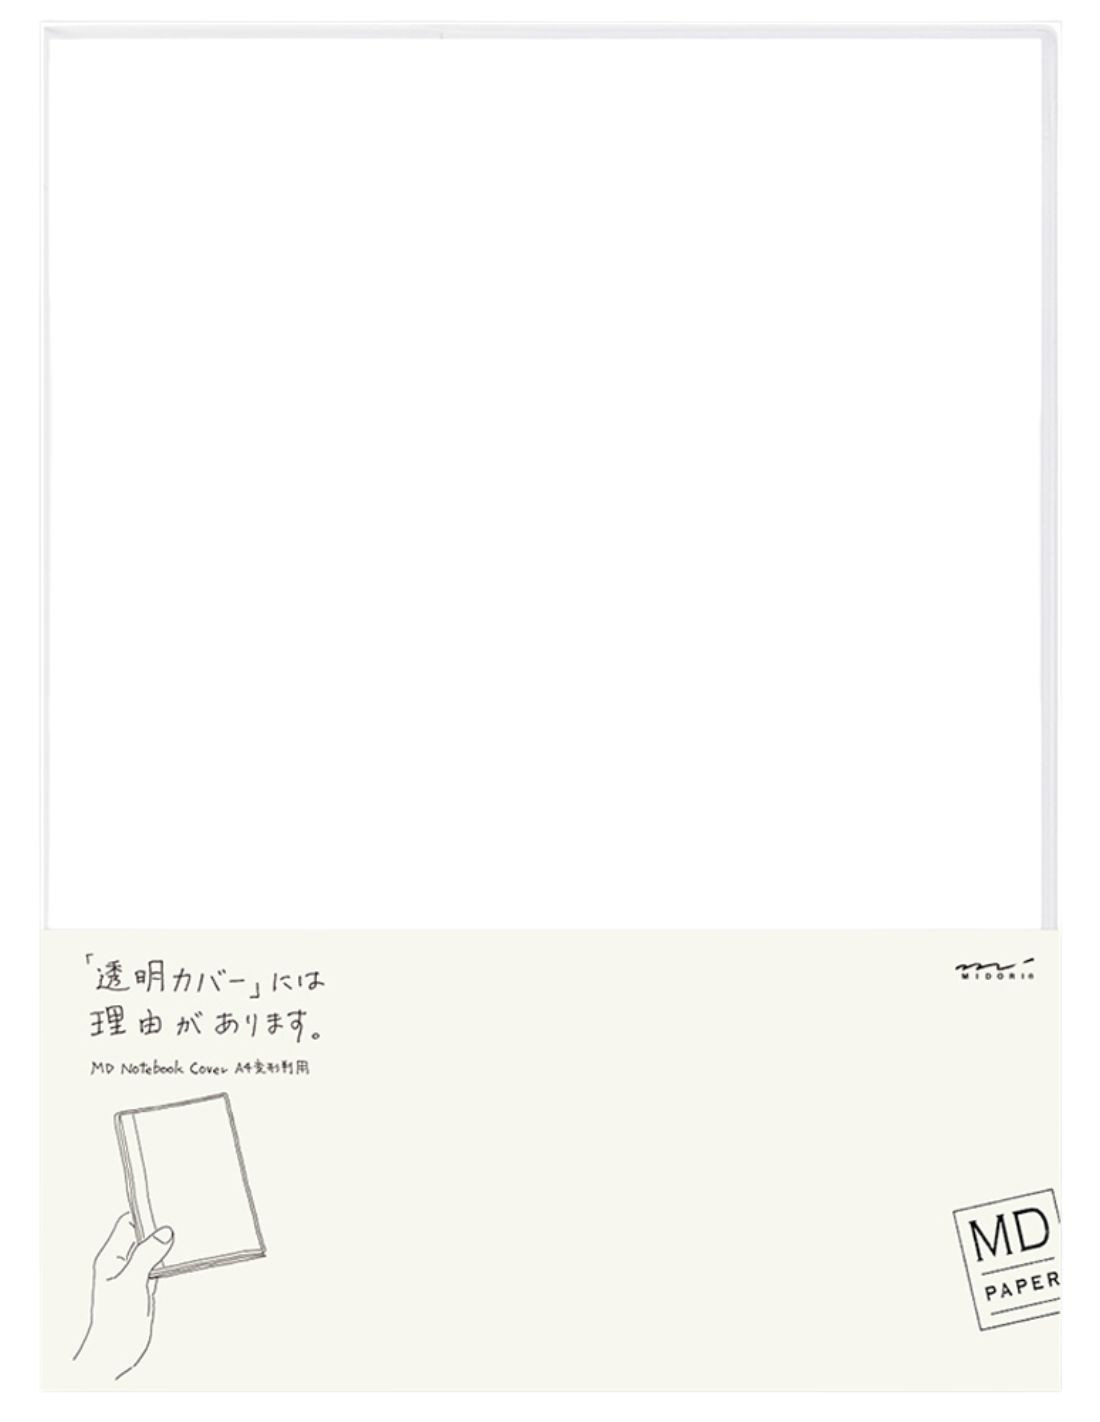 Couverture pour carnet MD Paper - A4 - PVC - Midori